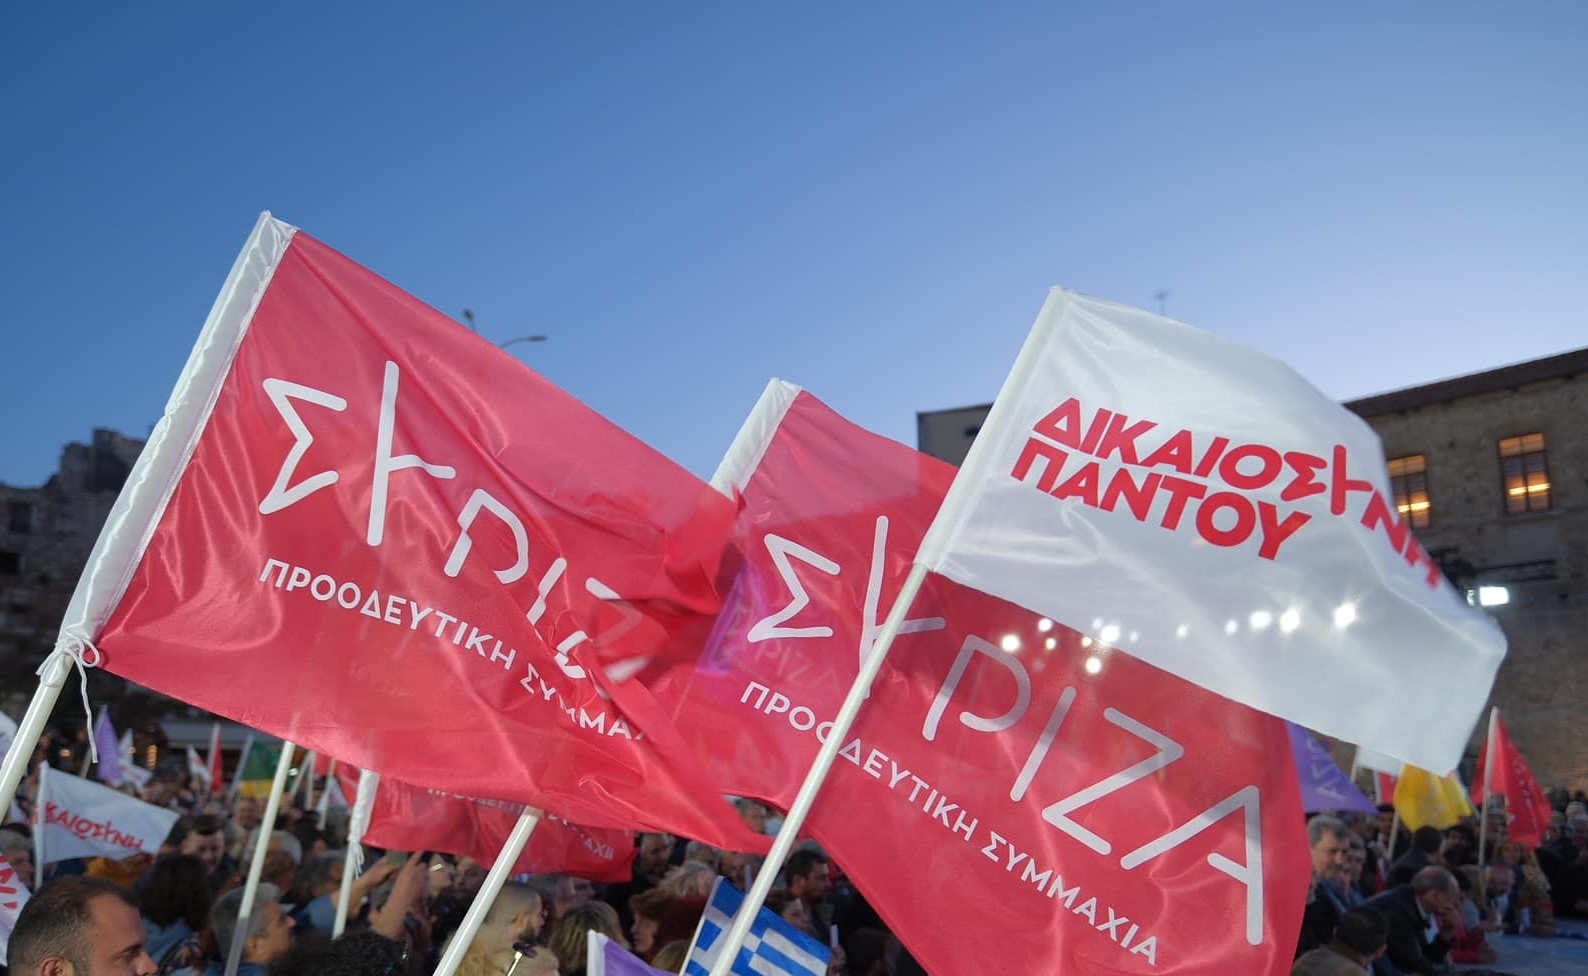 Στις 21 Ιουνίου η κεντρική προεκλογική εκδήλωση του ΣΥΡΙΖΑ στα Τρίκαλα 